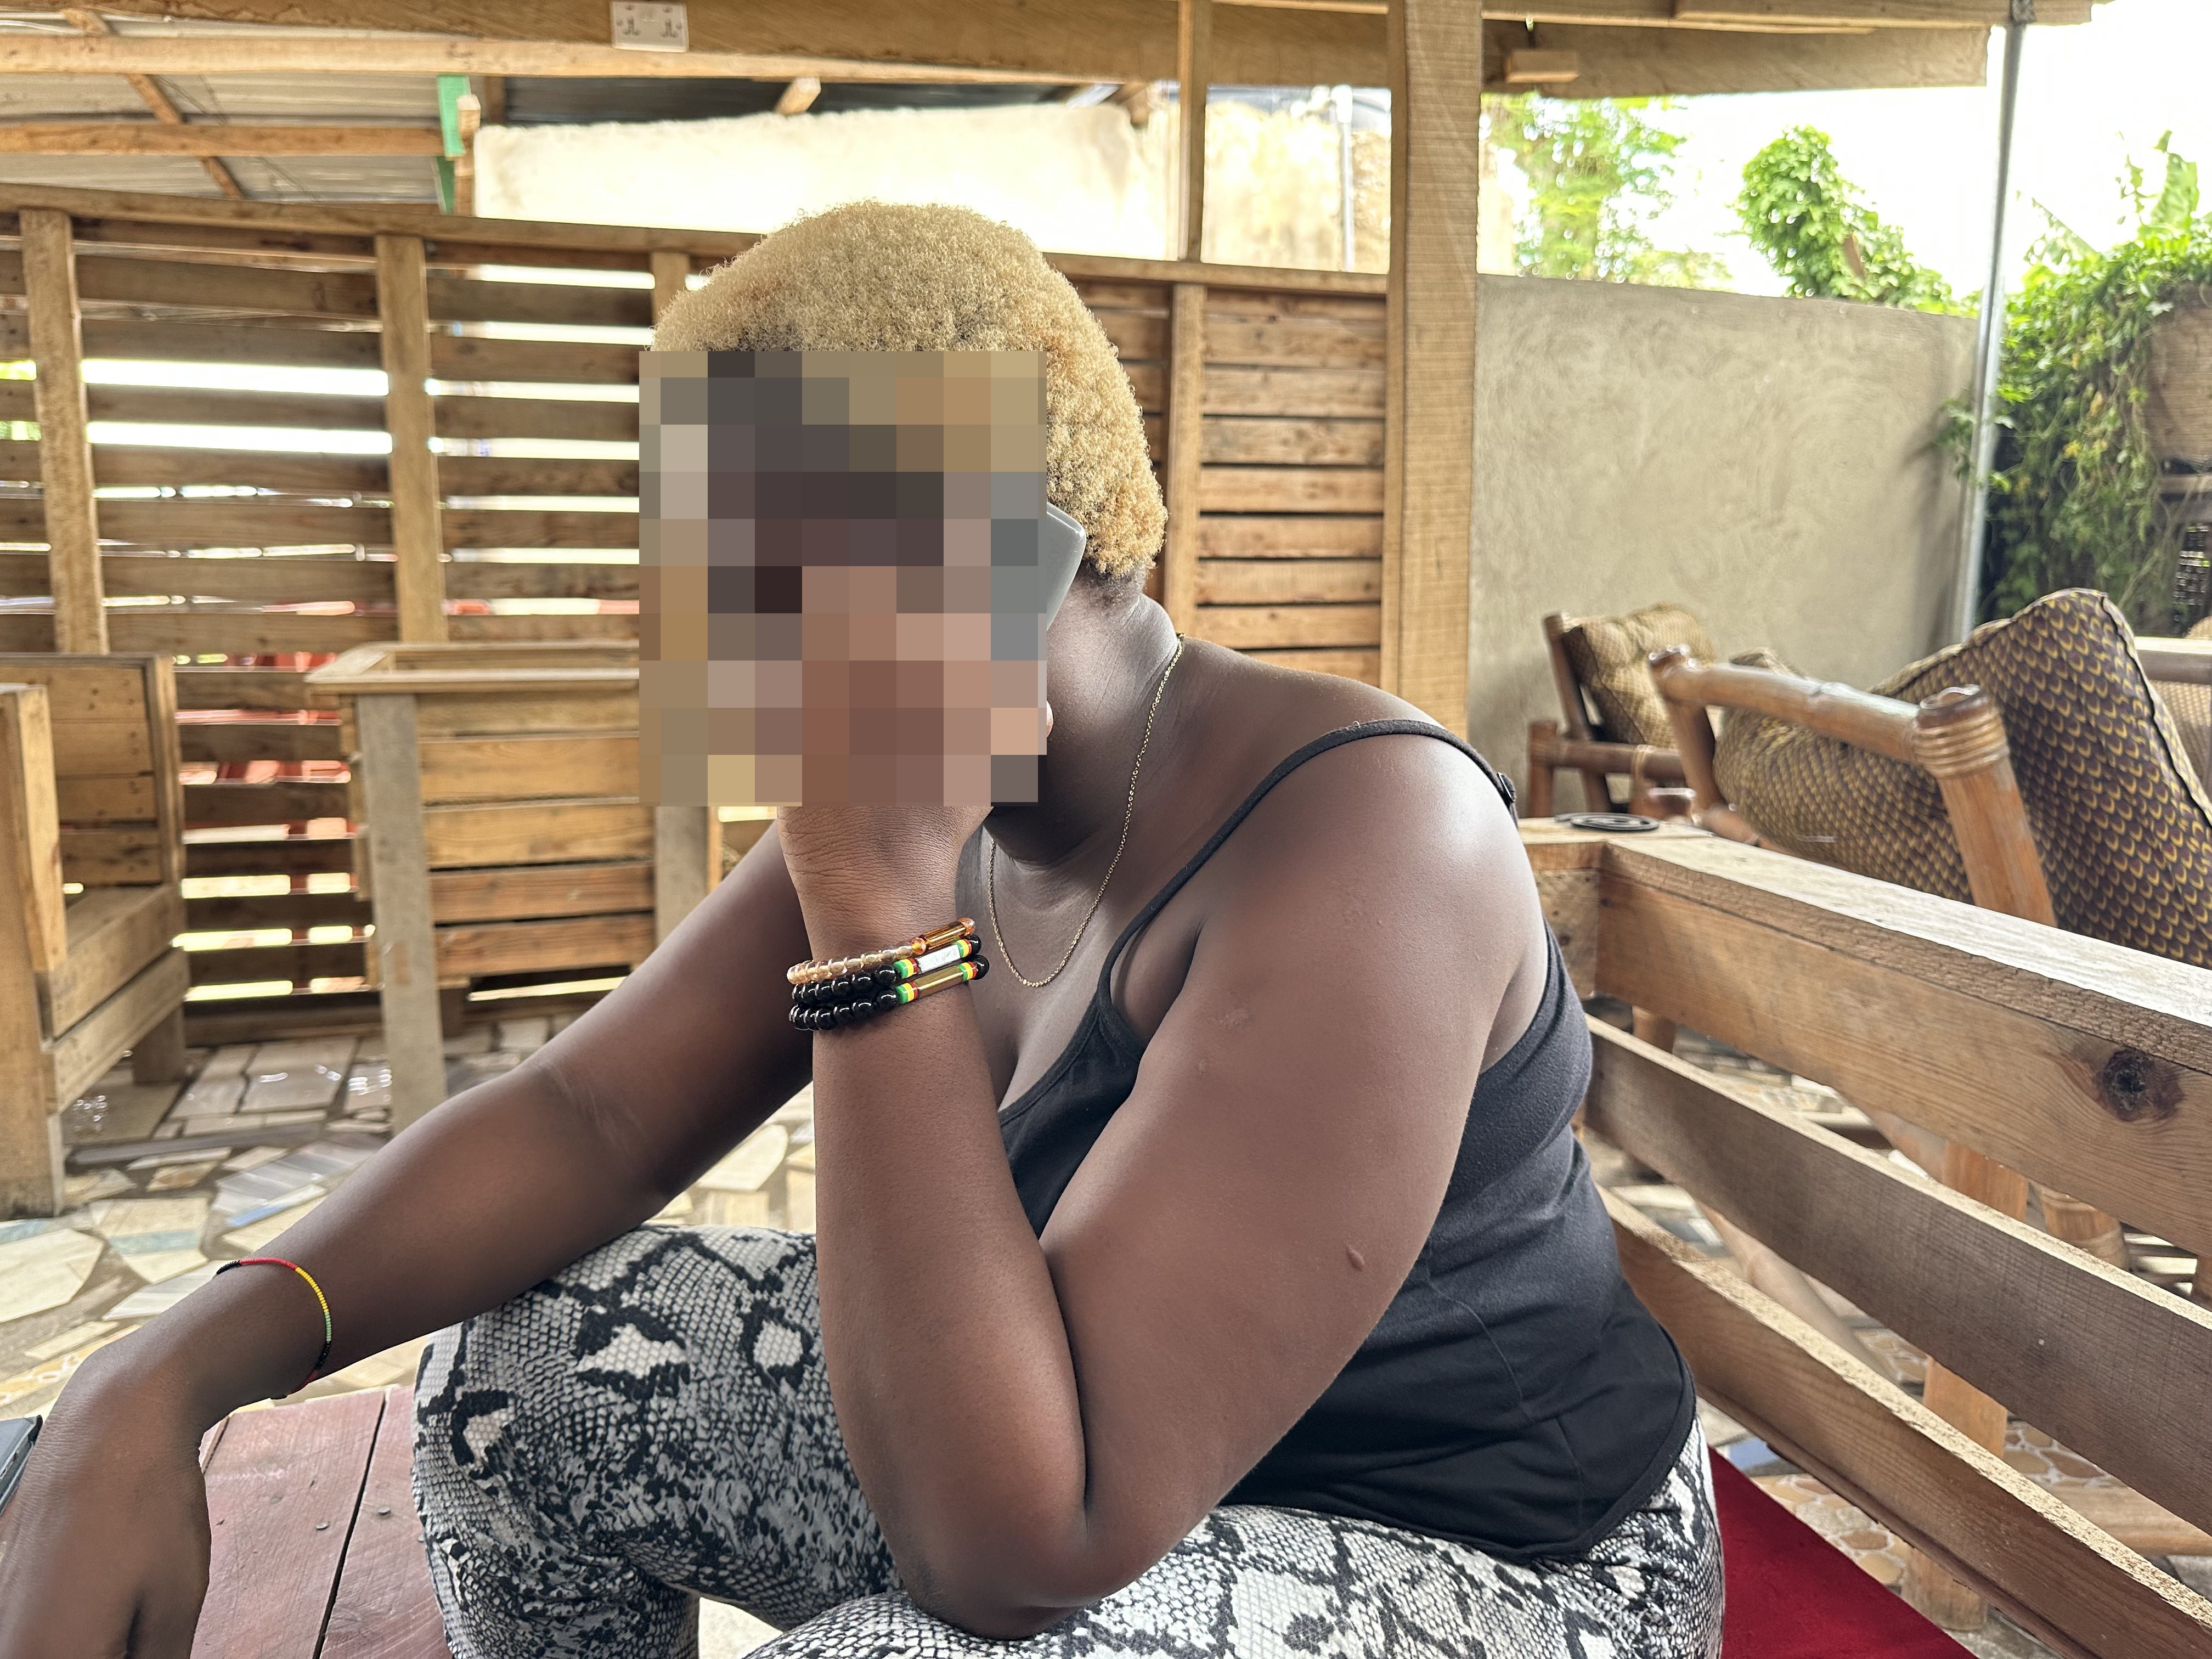 I knew it was a risk A Nigerian migrant sex worker in Ghana Womens Rights Al Jazeera